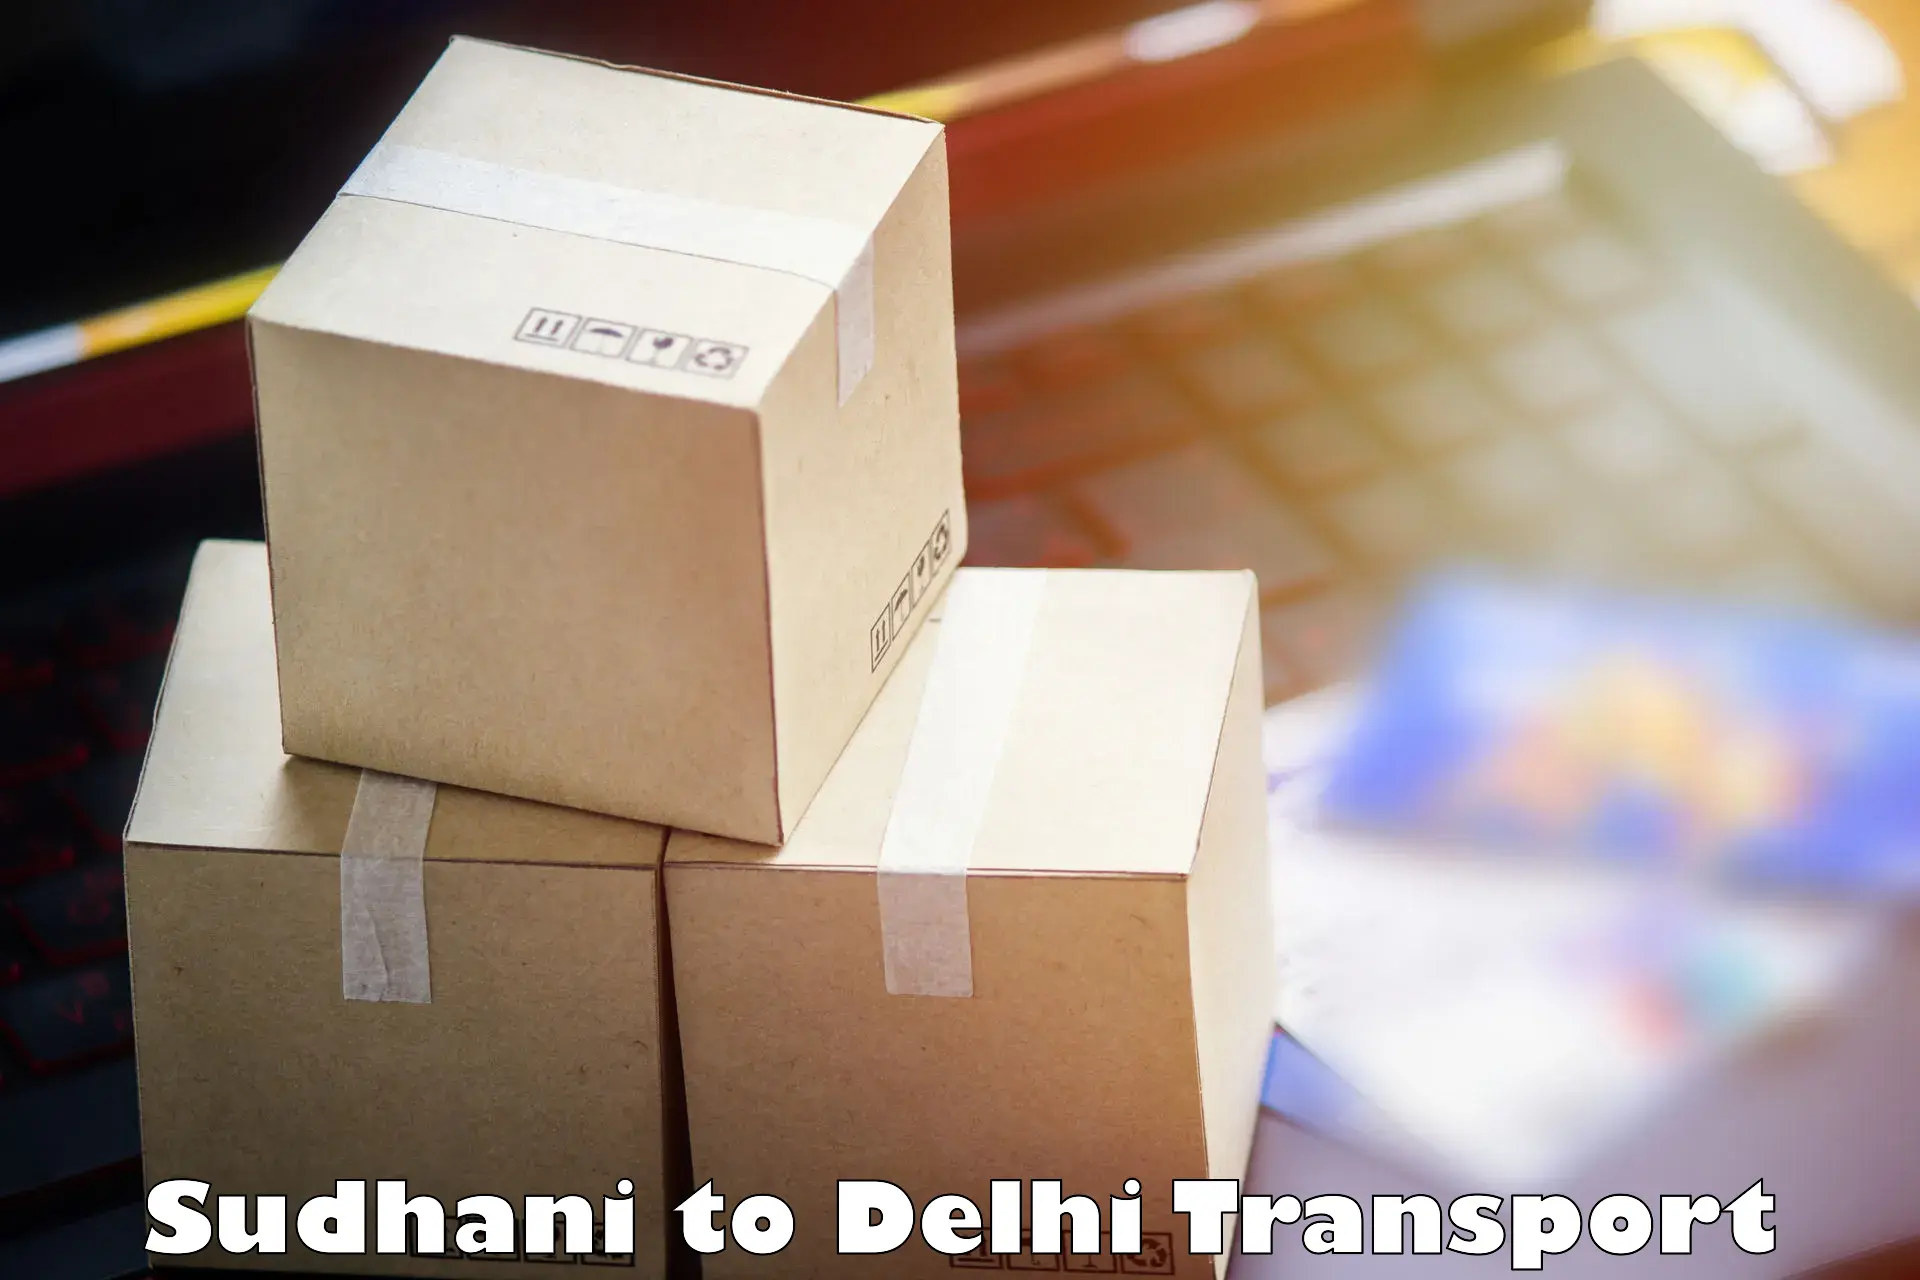 Delivery service Sudhani to Jamia Hamdard New Delhi